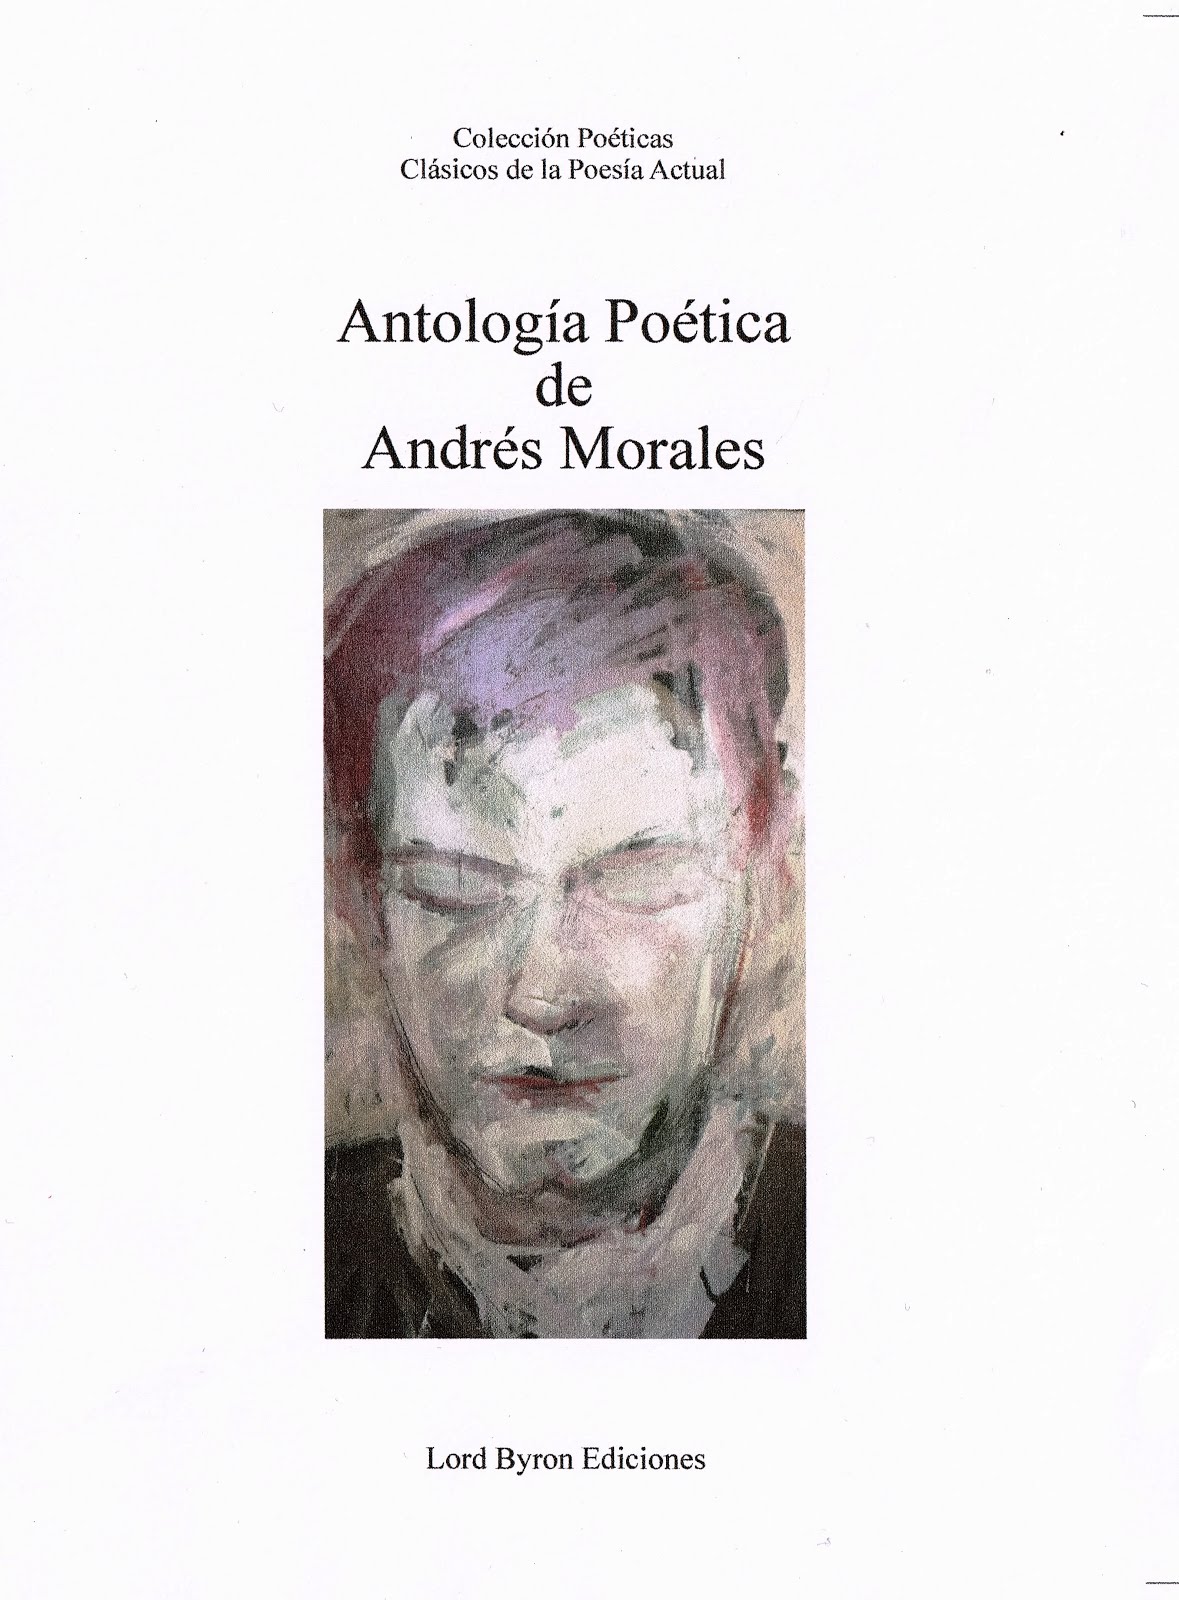 "ANTOLOGÍA POÉTICA" DE ANDRÉS MORALES